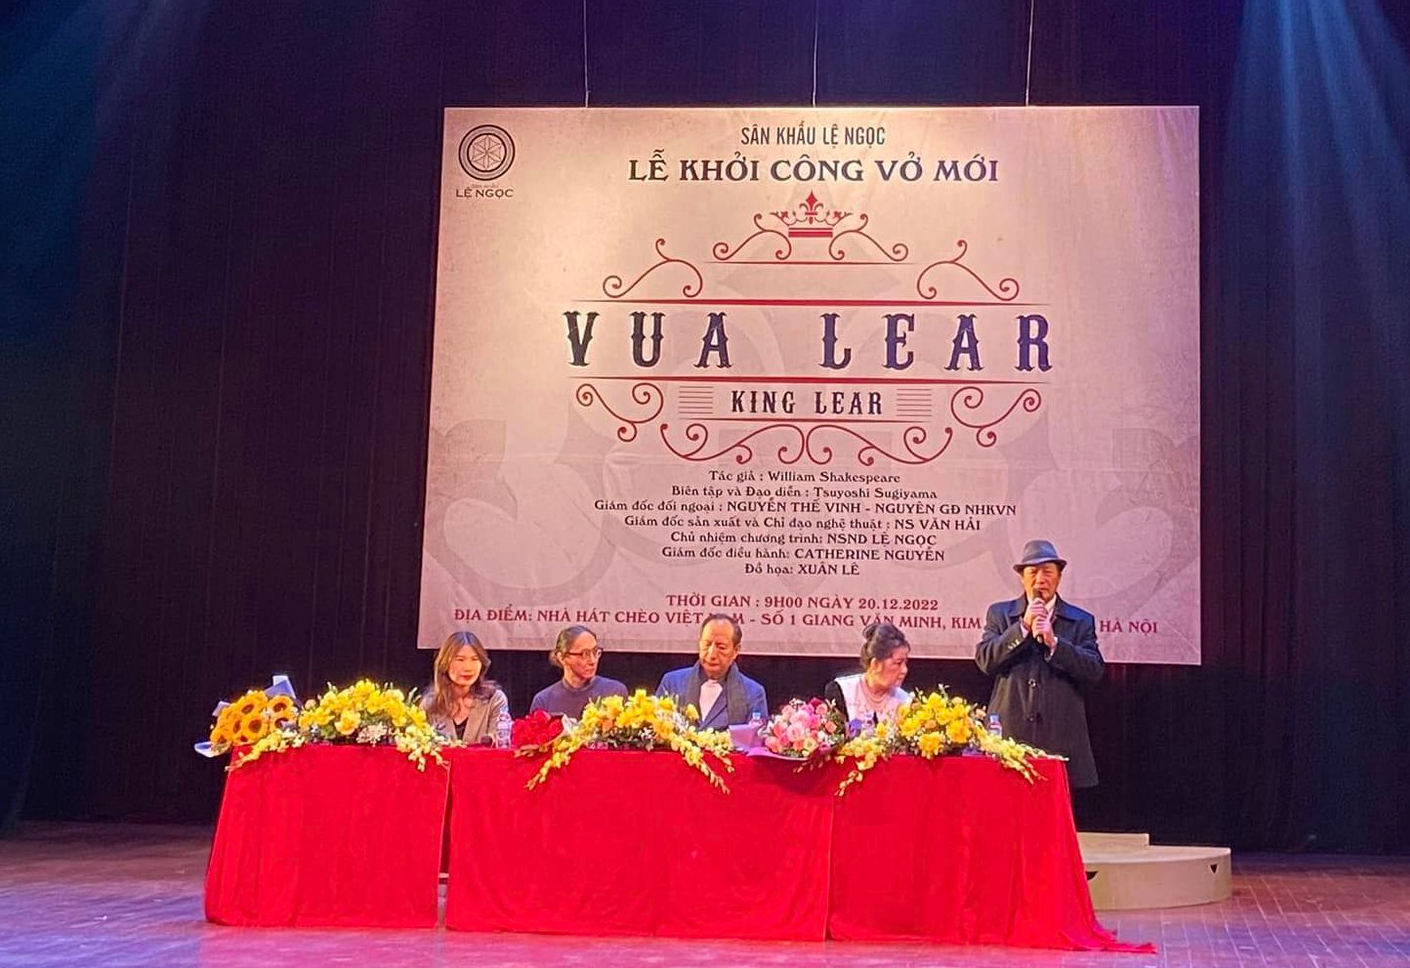 Đạo diễn người Nhật dựng “Vua Lear” của Shakespeare để thức tỉnh lương tri người Việt - Ảnh 1.